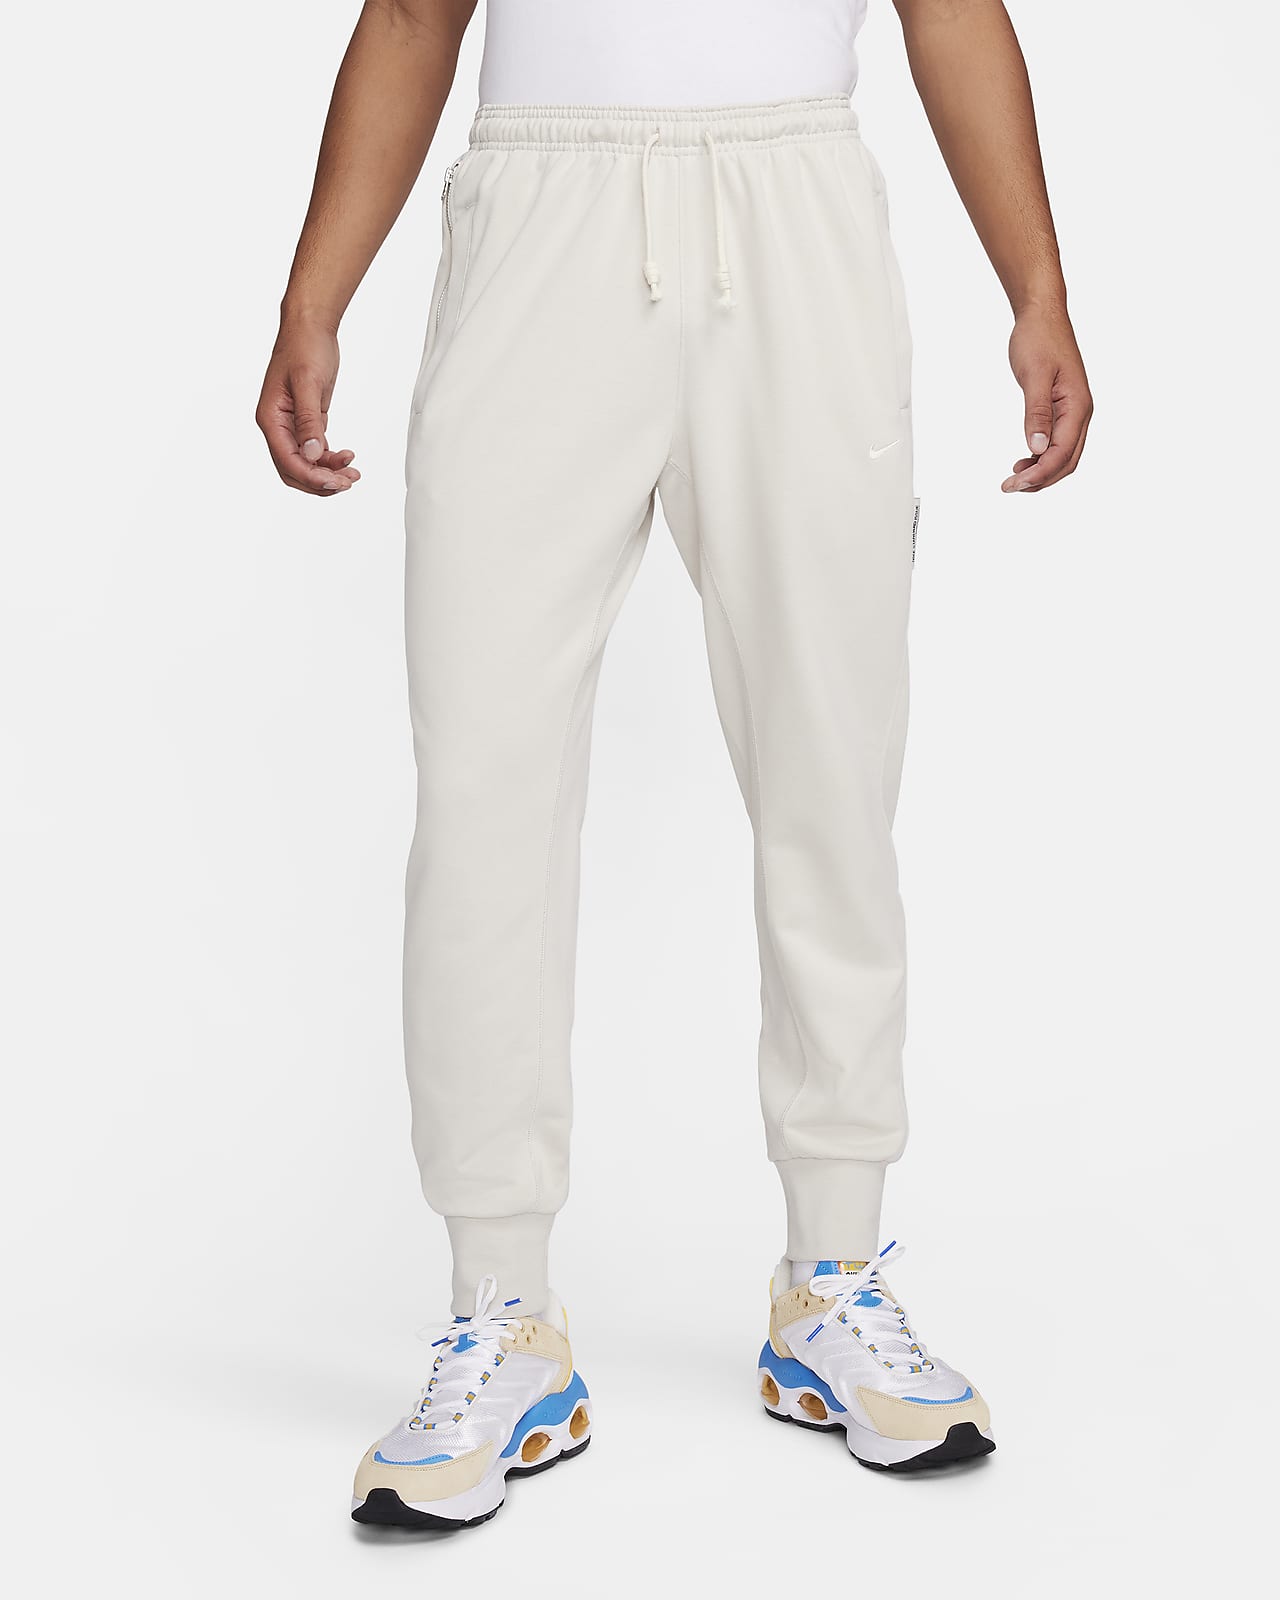 Pants de fútbol Dri-FIT para hombre Nike Standard Issue